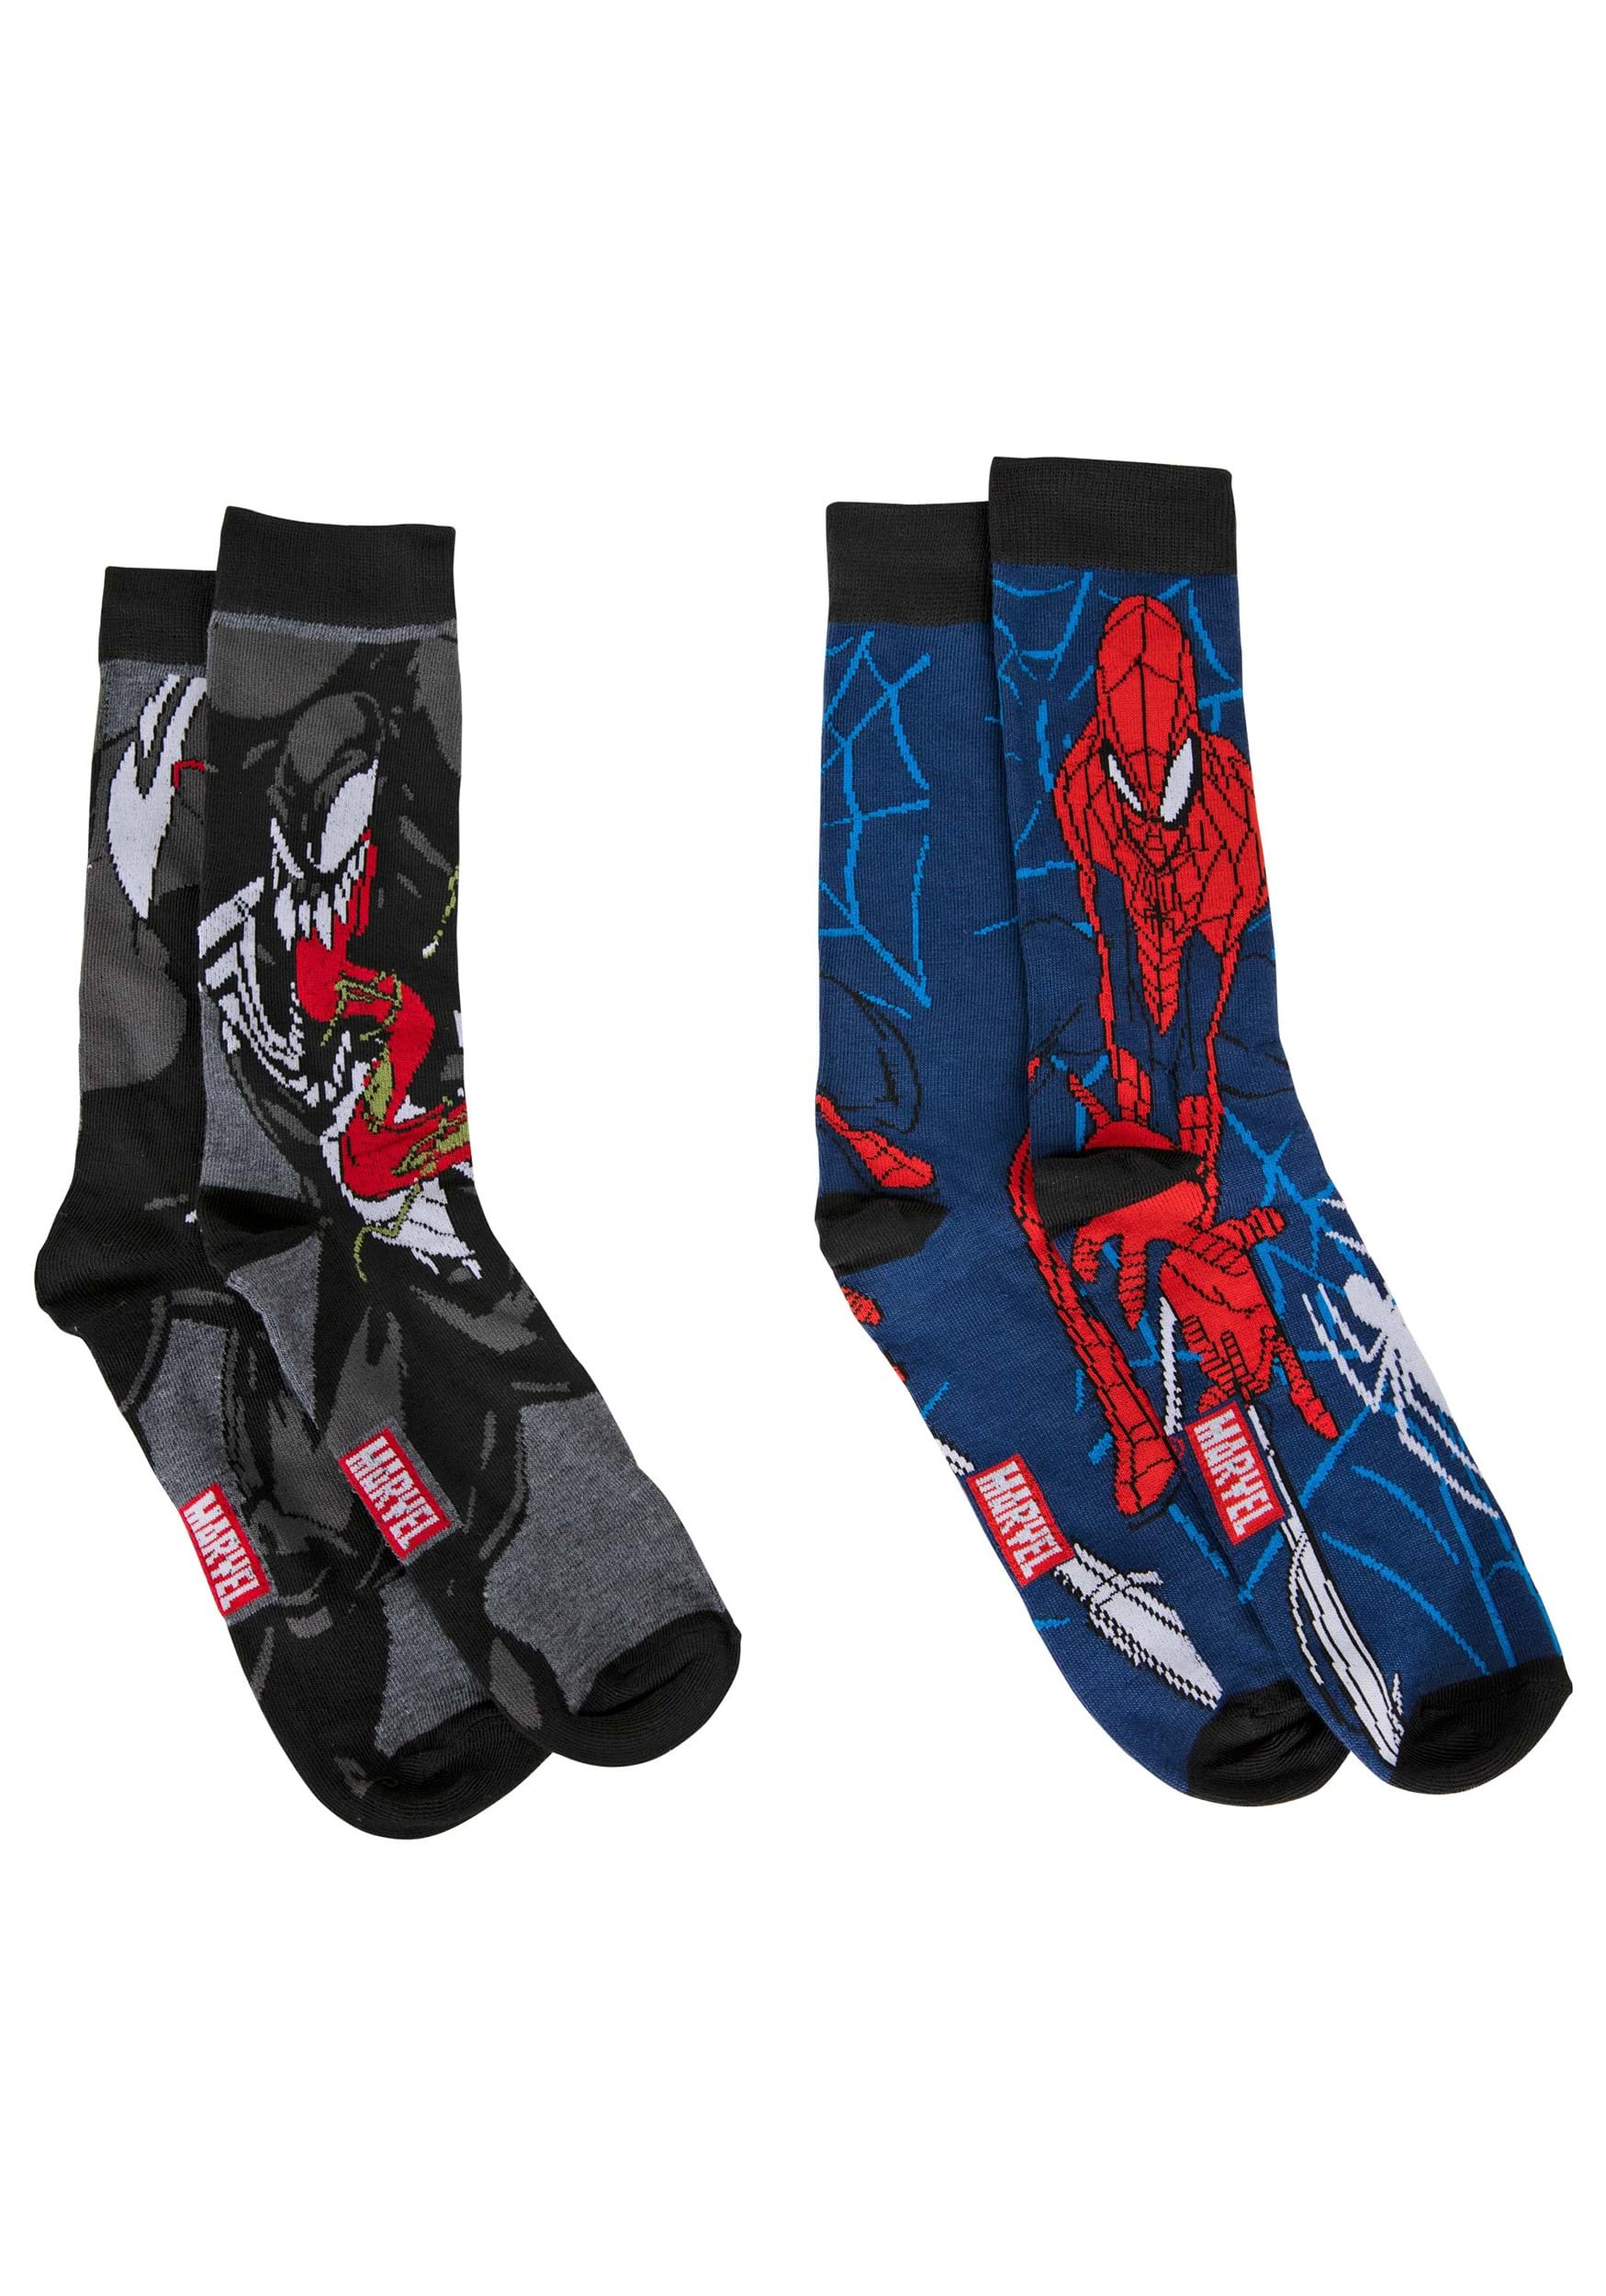 Spiderman Marvel  Crew Socks Mens 6-12           2 Pairs 